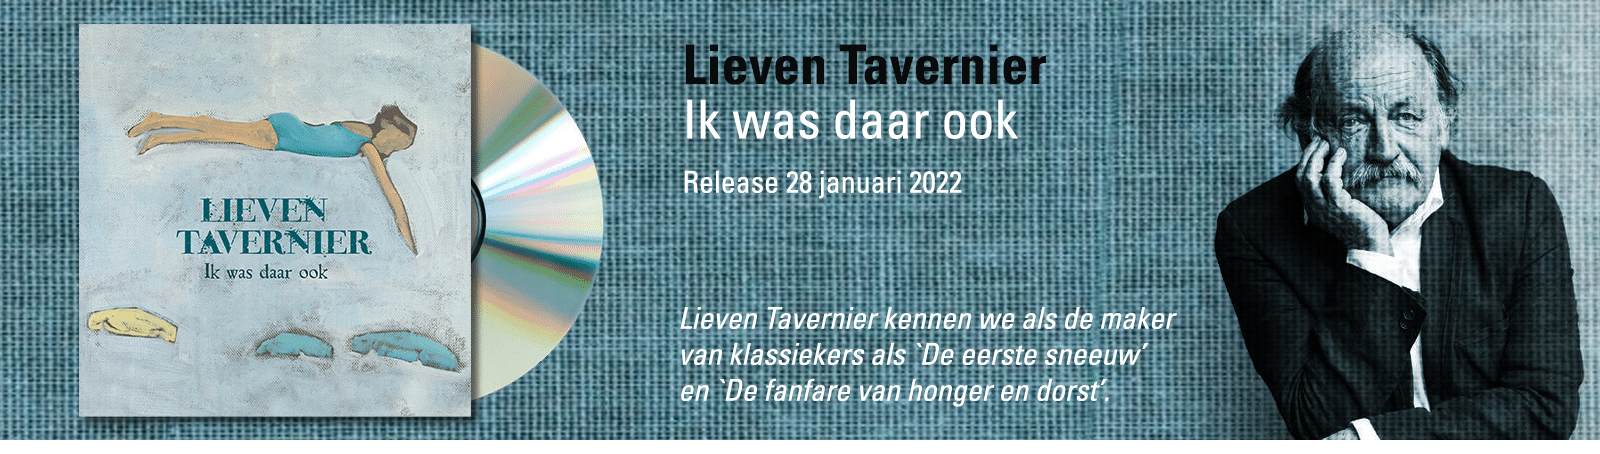 Banner Lieven Tavernier-1600px